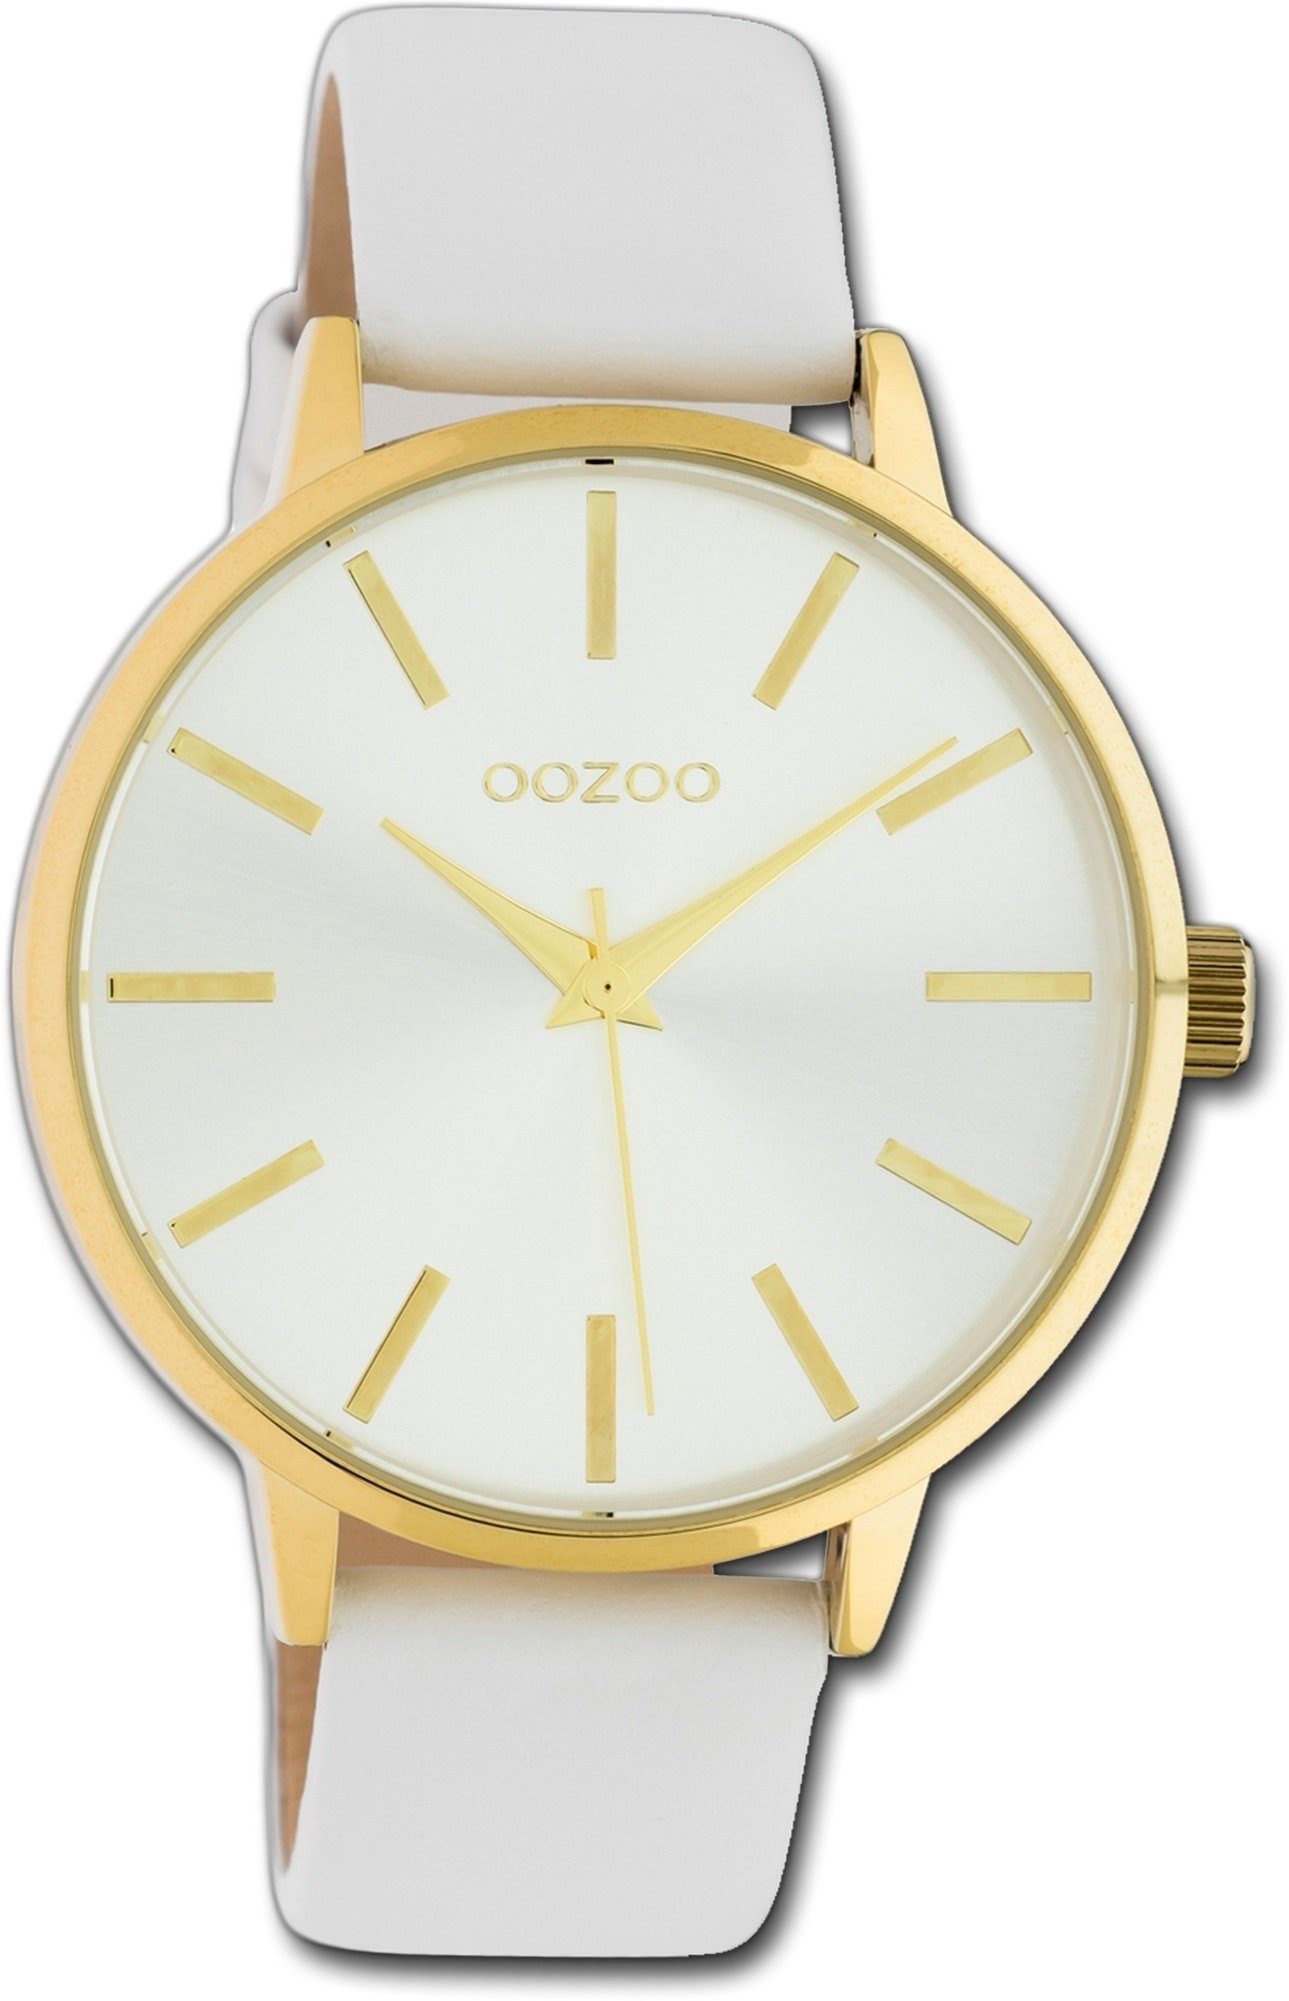 42mm) Uhr groß OOZOO weiß, Quarzuhr C10611 Lederarmband rundes Gehäuse, Leder (ca. Damen Analog, Damenuhr Oozoo